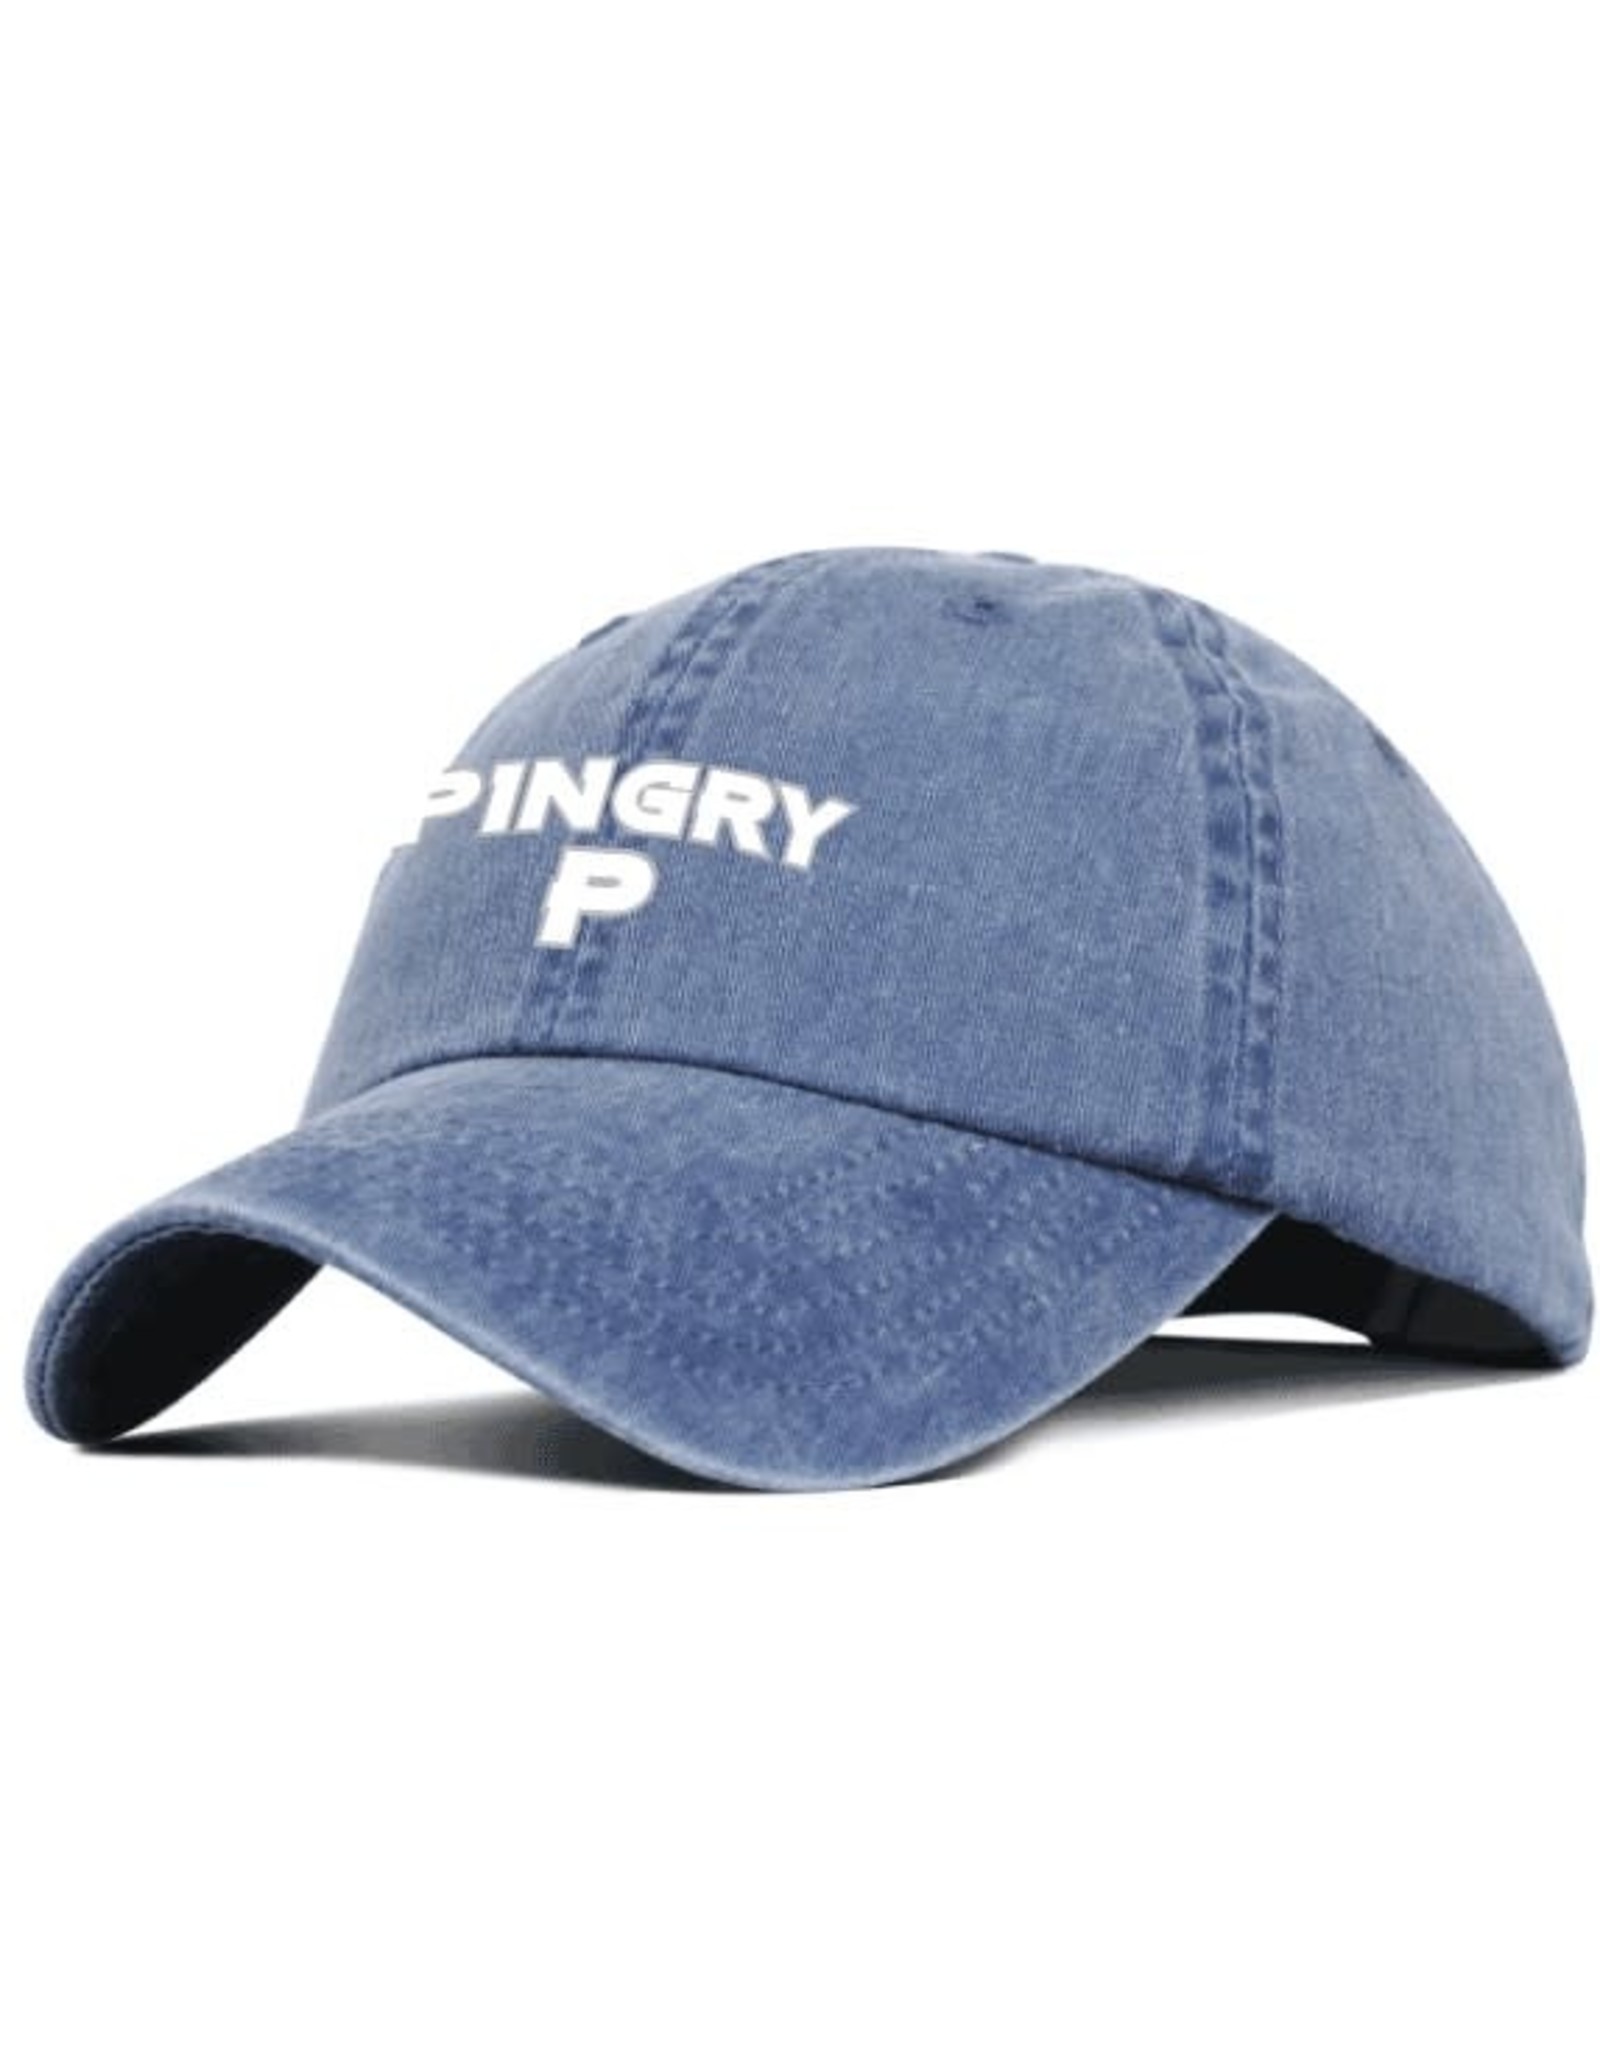 Baseball cap-washed indigo